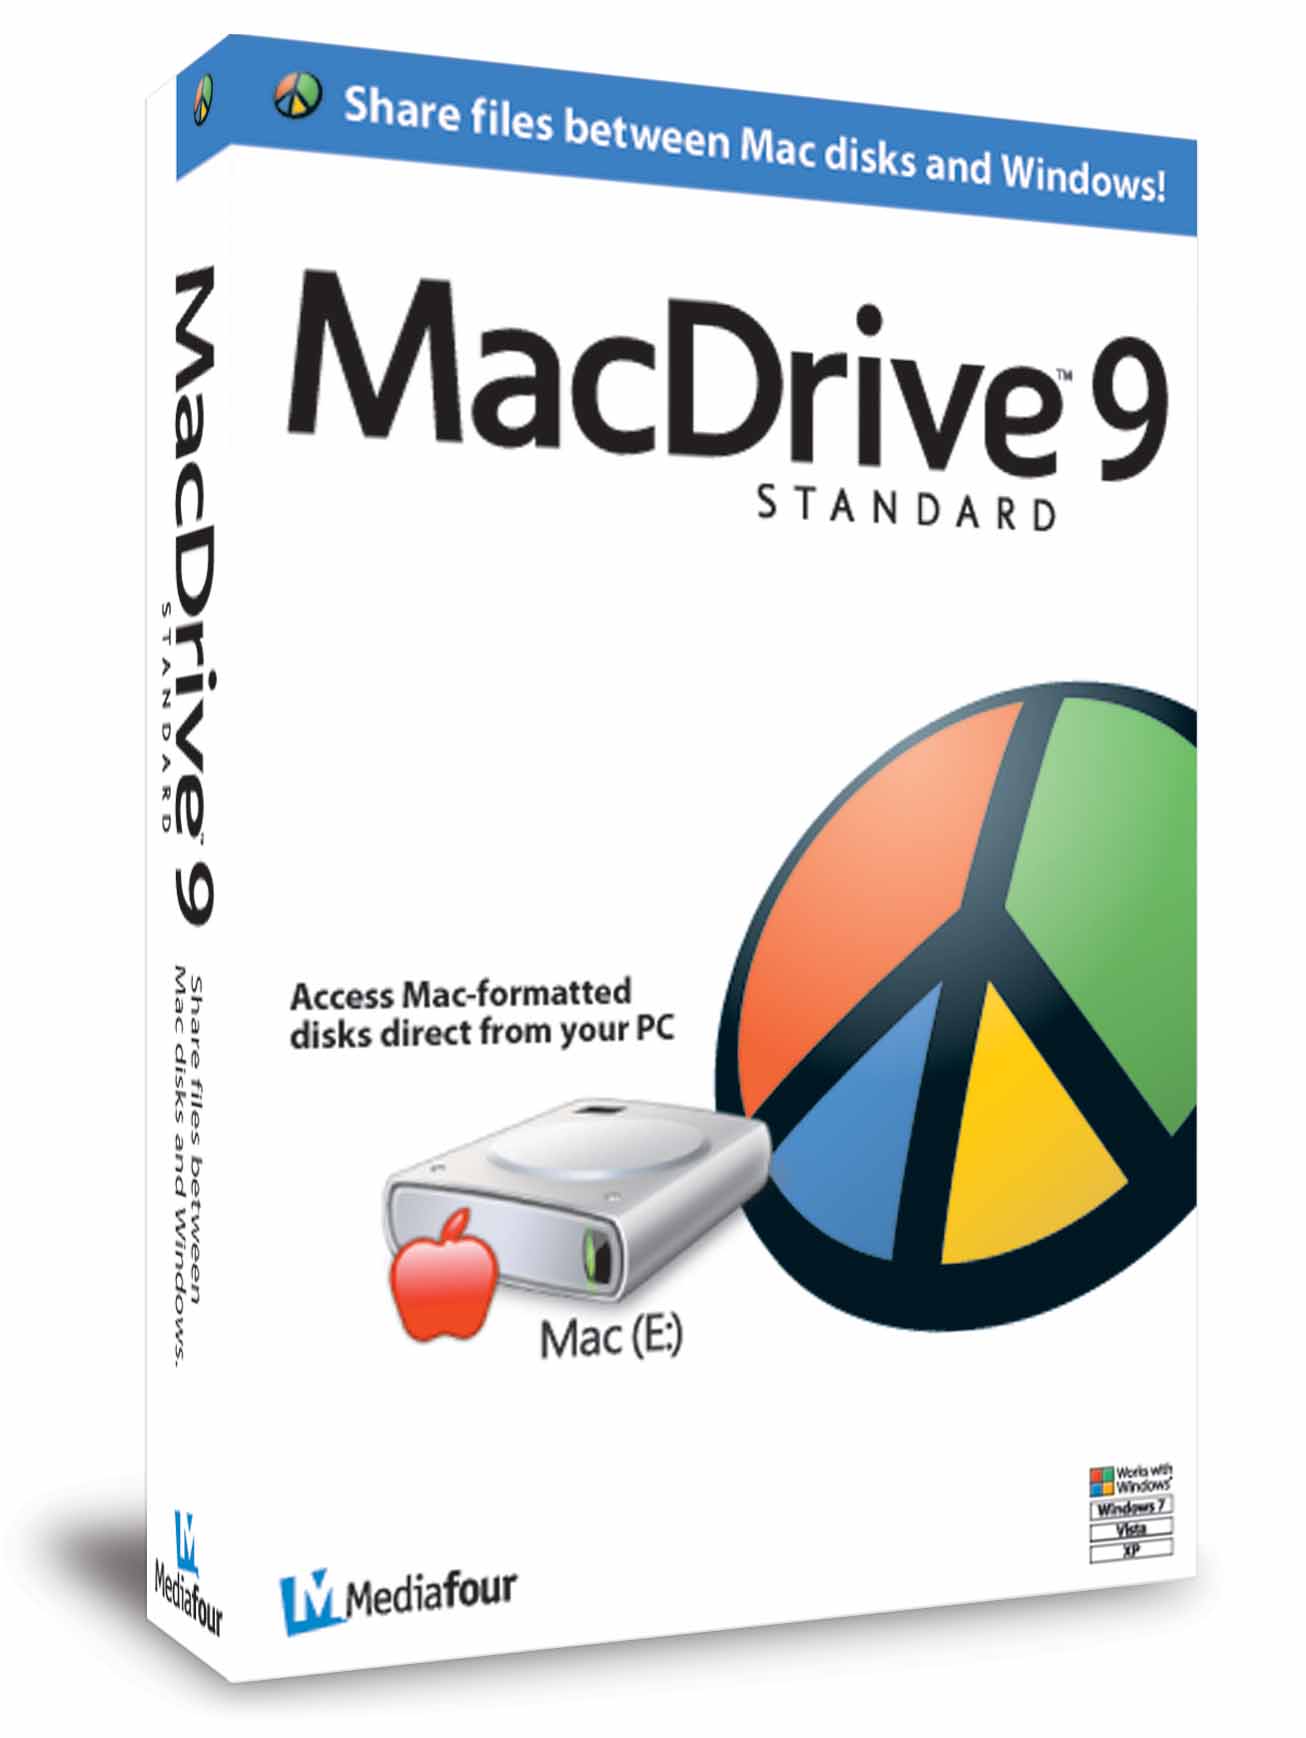 مميزات وتحميل برنامج MacDrive لتبادل ملفات ماك وويندوز